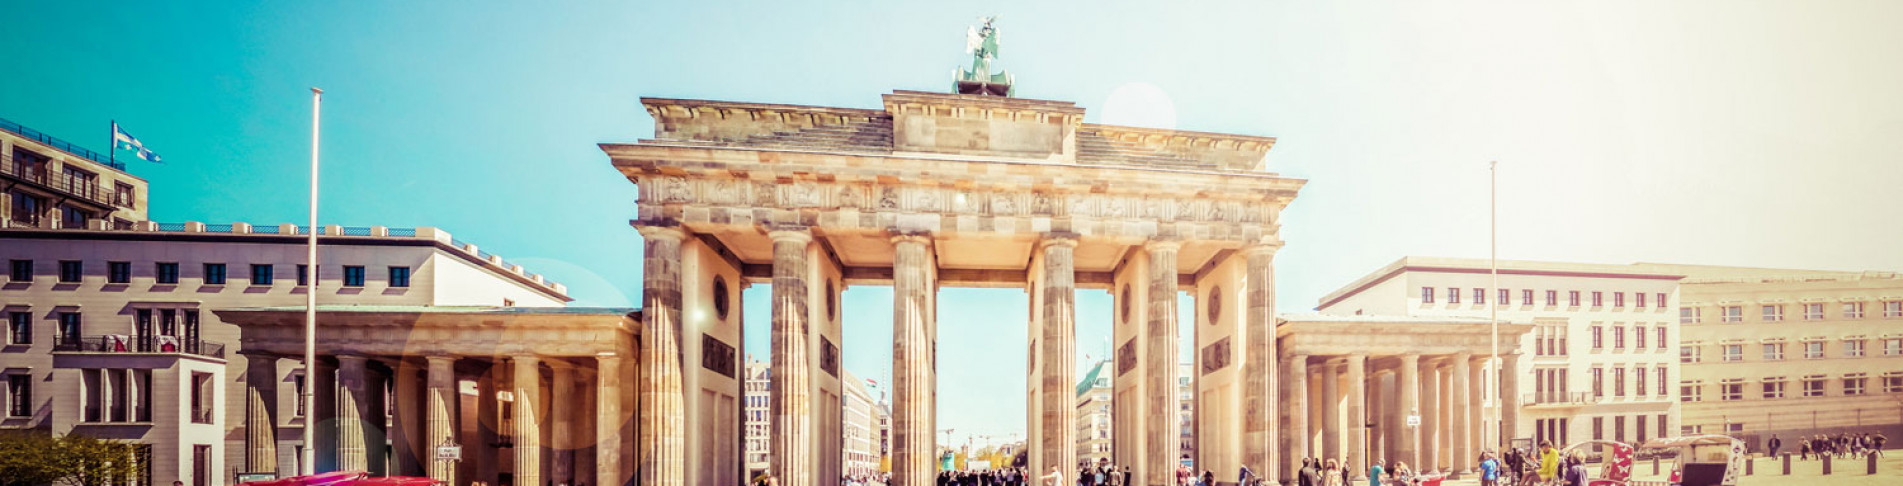 Blick auf das Brandenburger Tor bei einer Städtereise nach Berlin